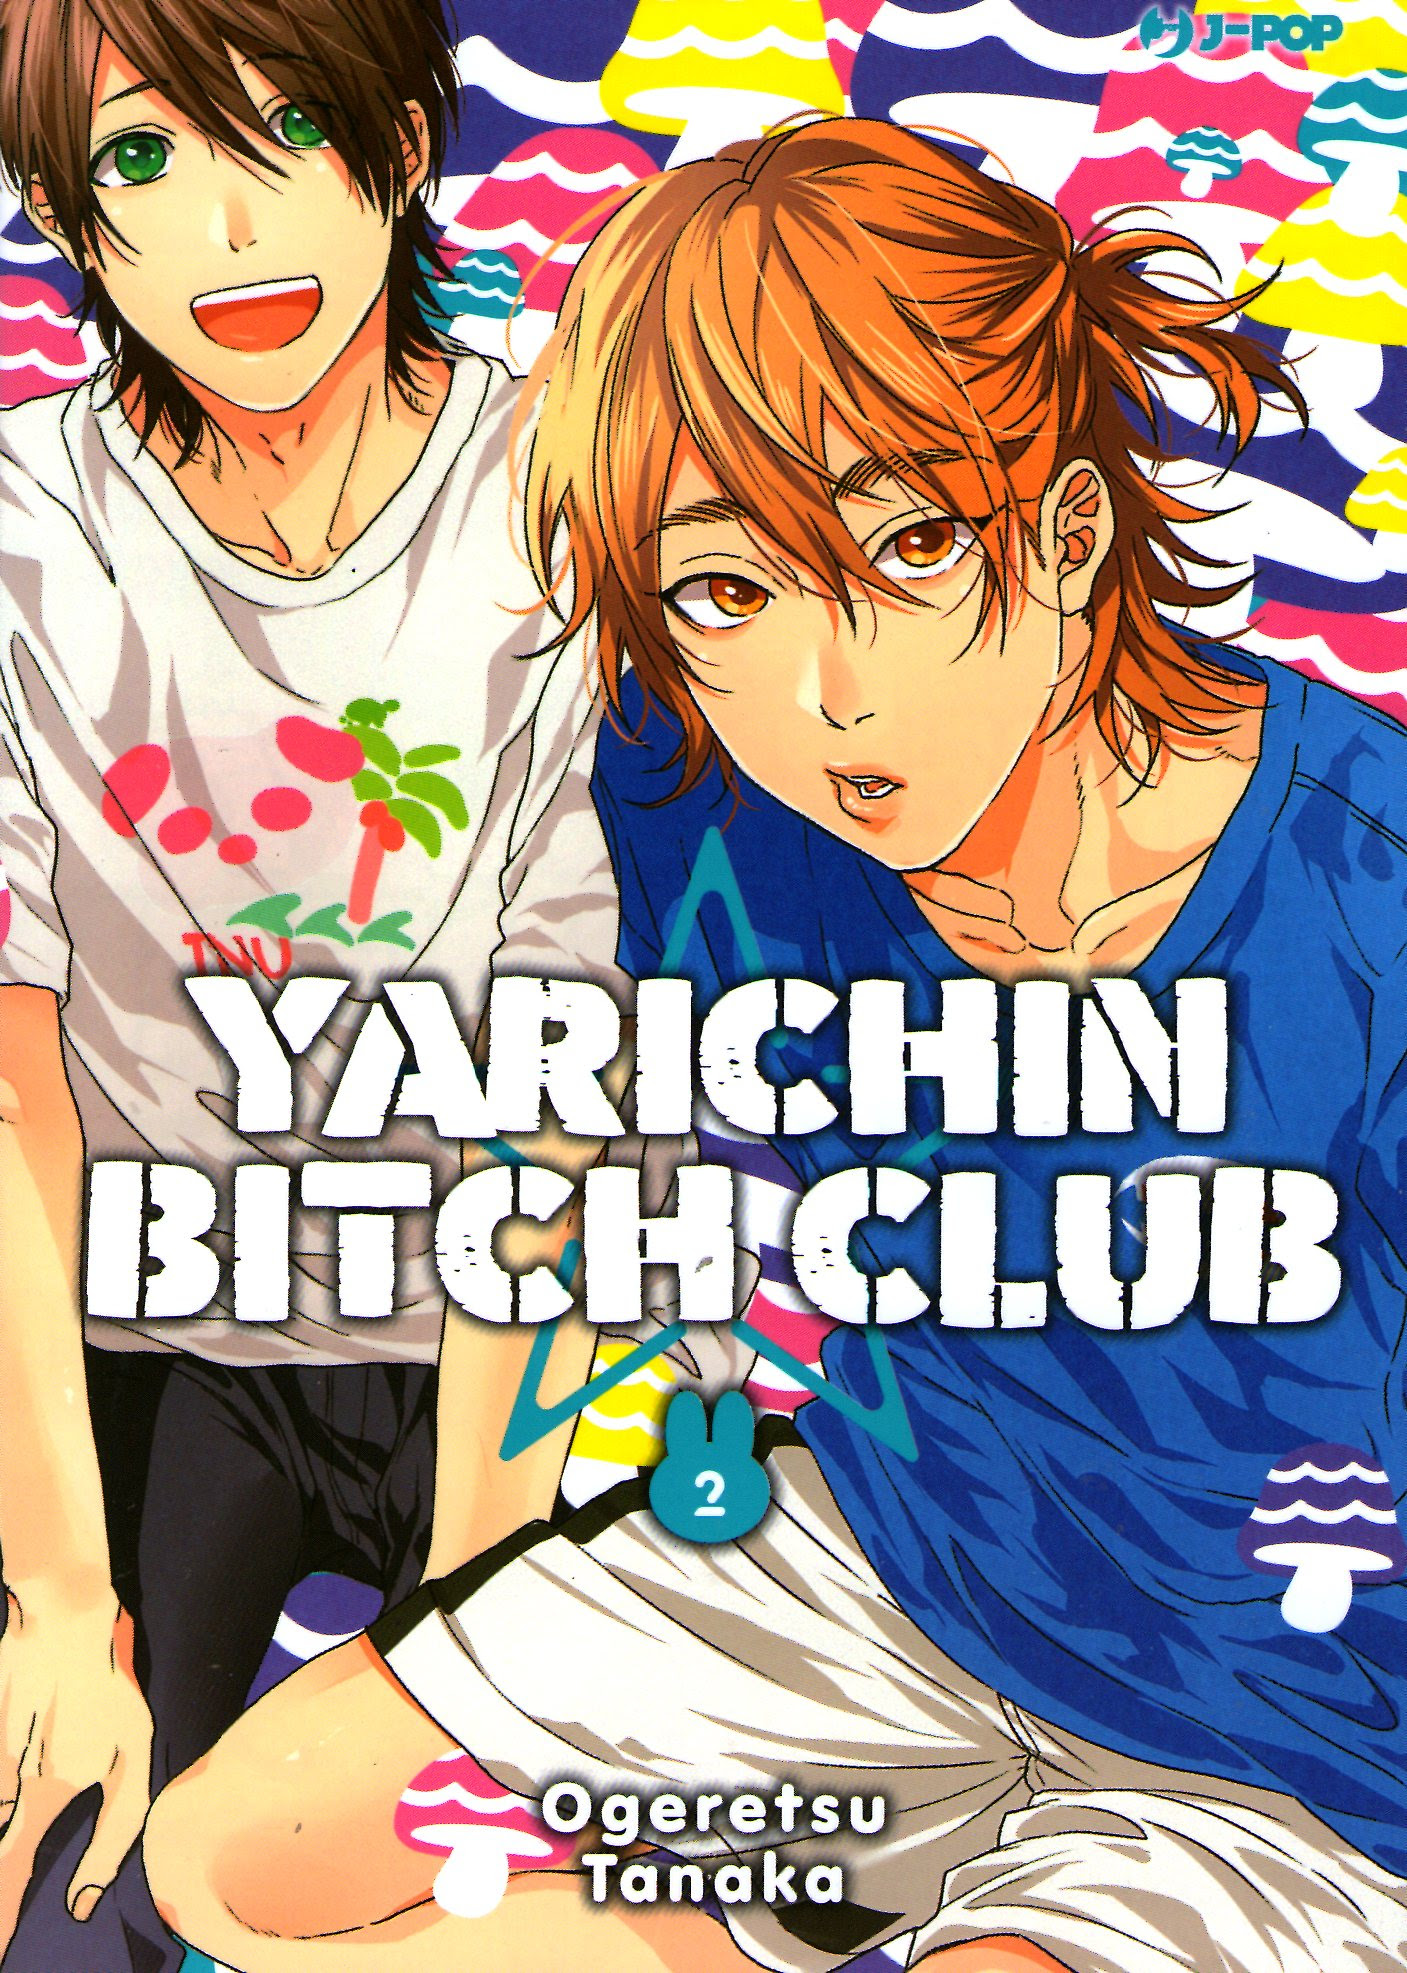 Yarichin Bitch Club, Vol. 2 in Kindle/PDF/EPUB